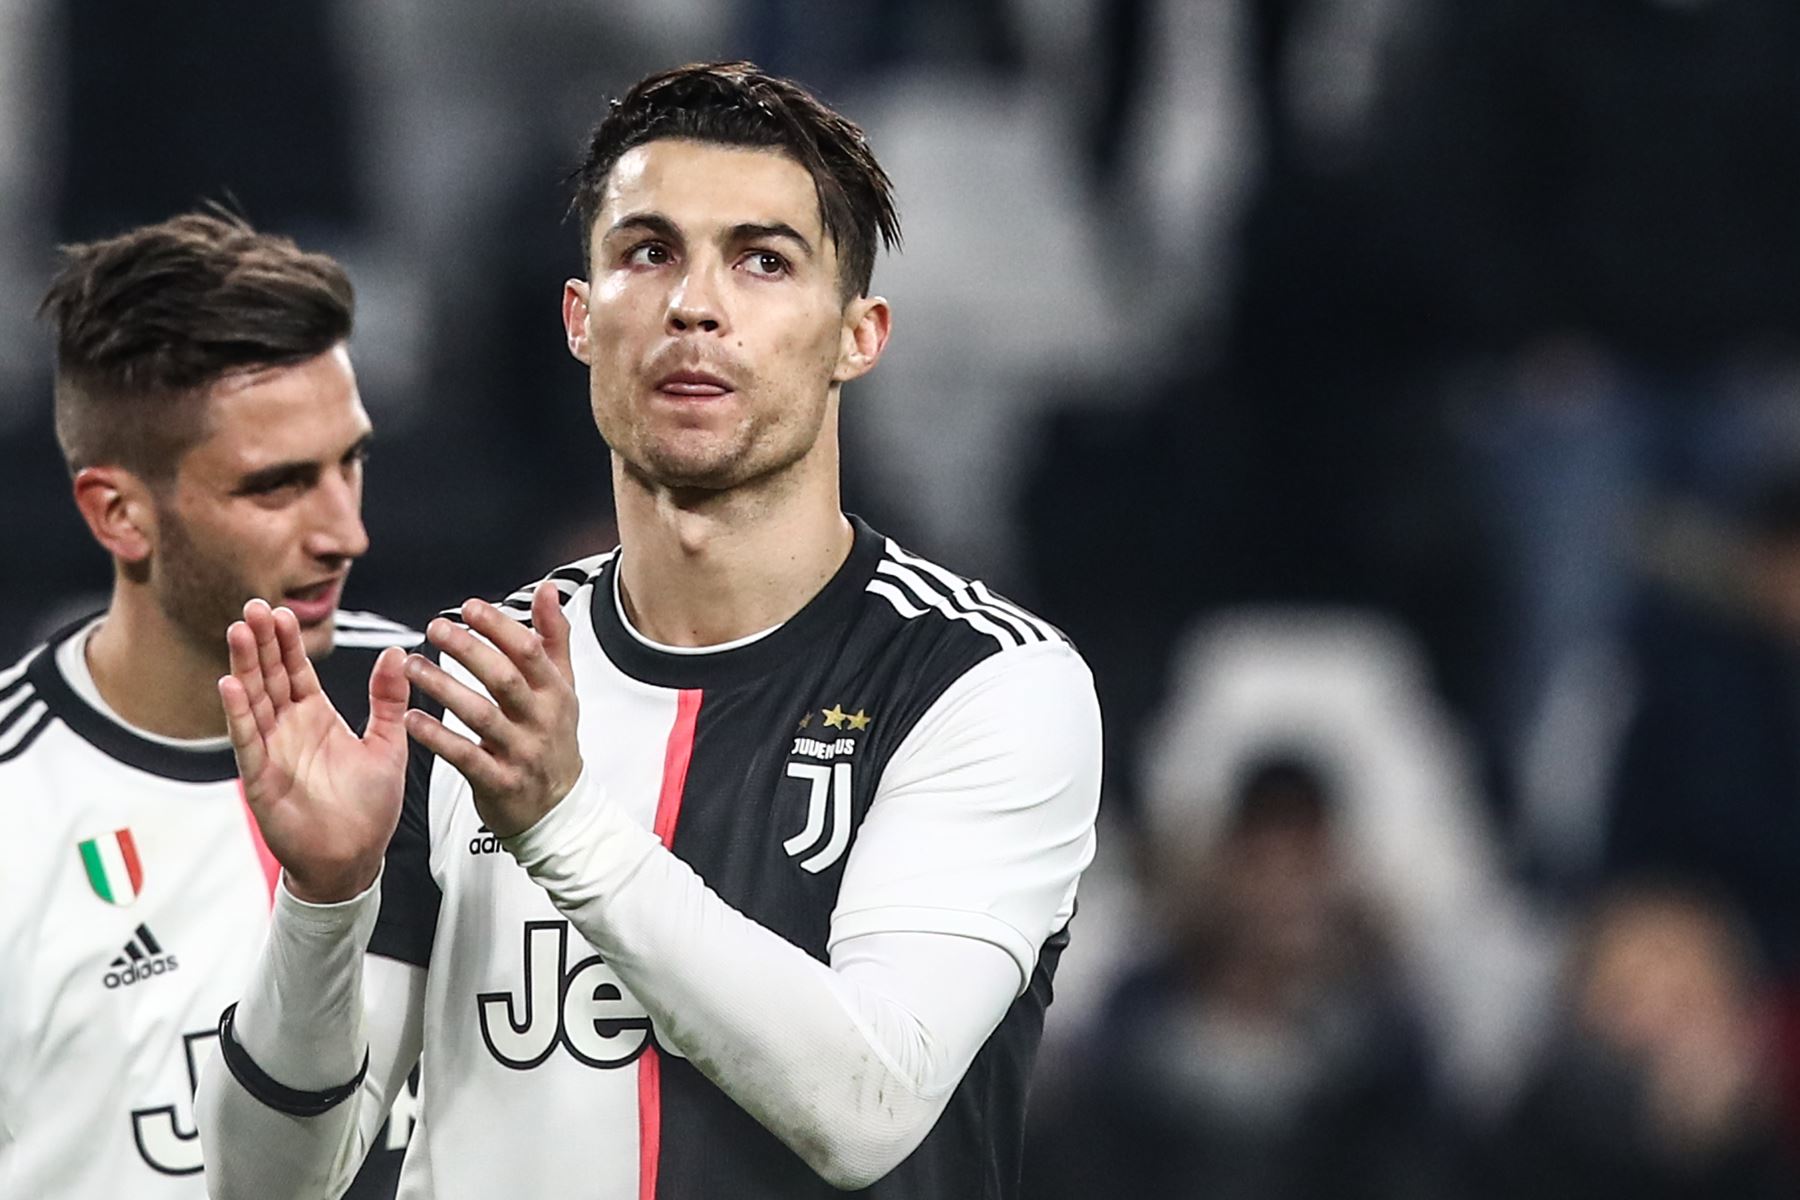 El delantero portugués de la Juventus, Cristiano Ronaldo, reconoce al público al final del partido de fútbol de la Serie A italiana Juventus vs Udinese.
Foto: AFP